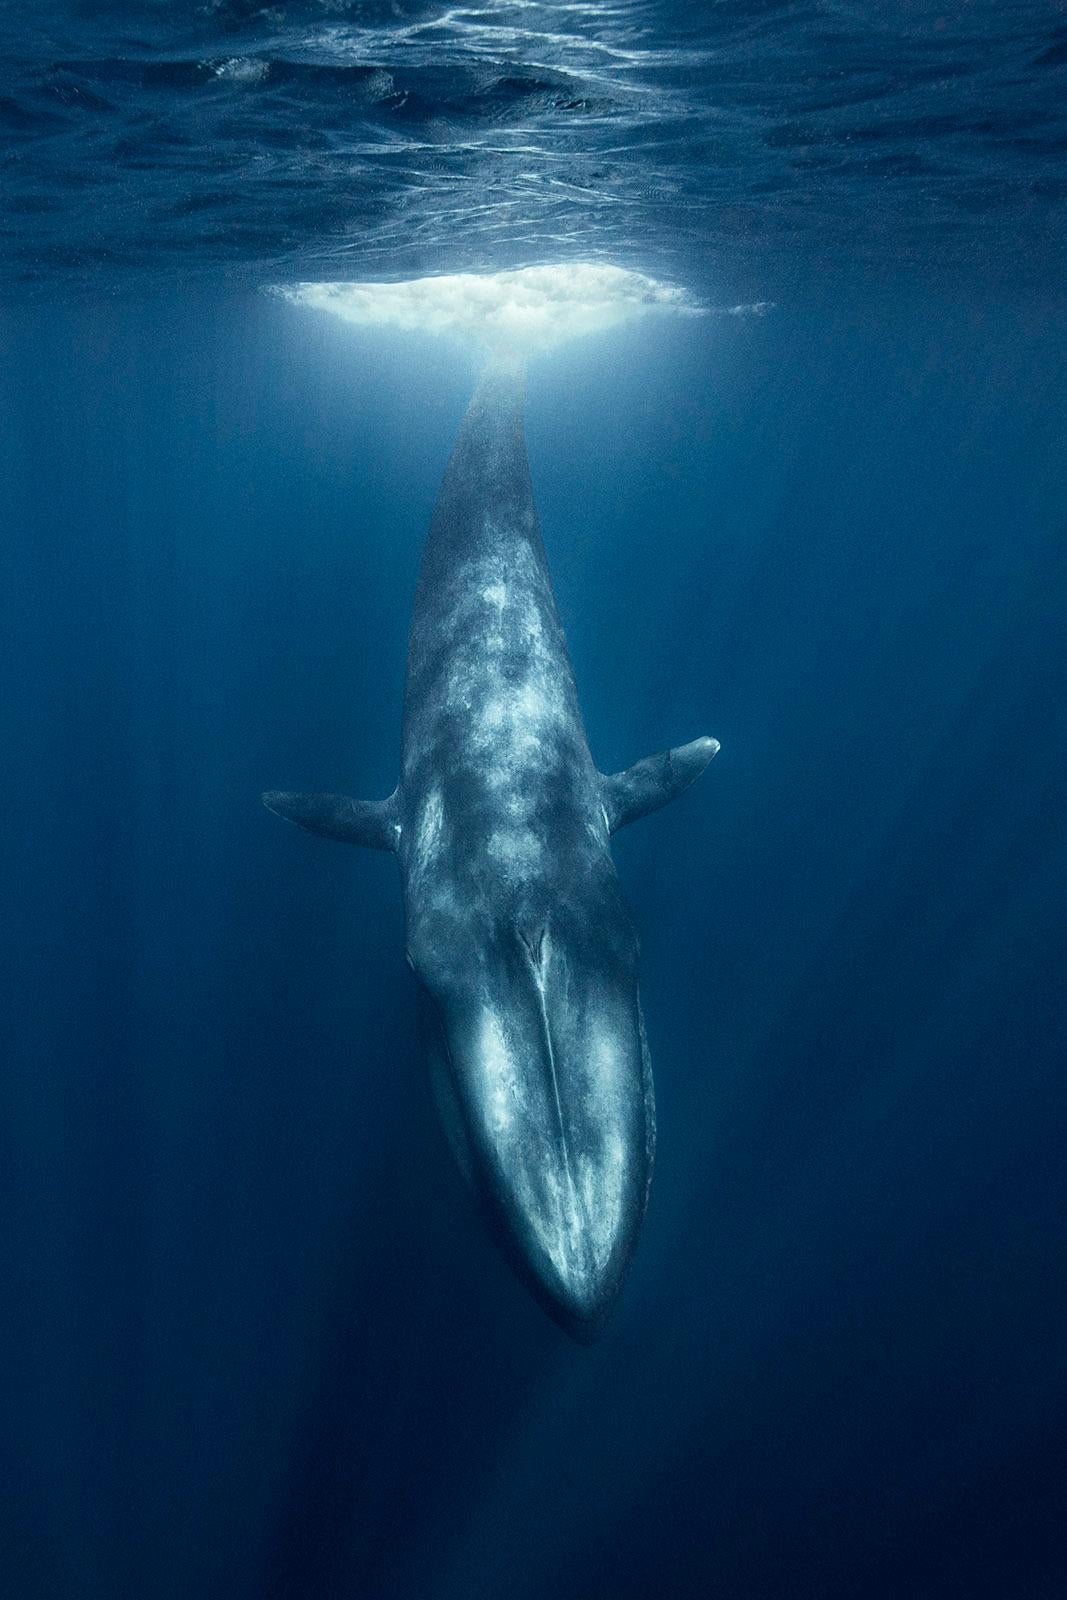 Dives Blauer Wal - signierter, limitierter Kunstdruck, Farbe unter Wasser Foto (Zeitgenössisch), Photograph, von Olivier Borde